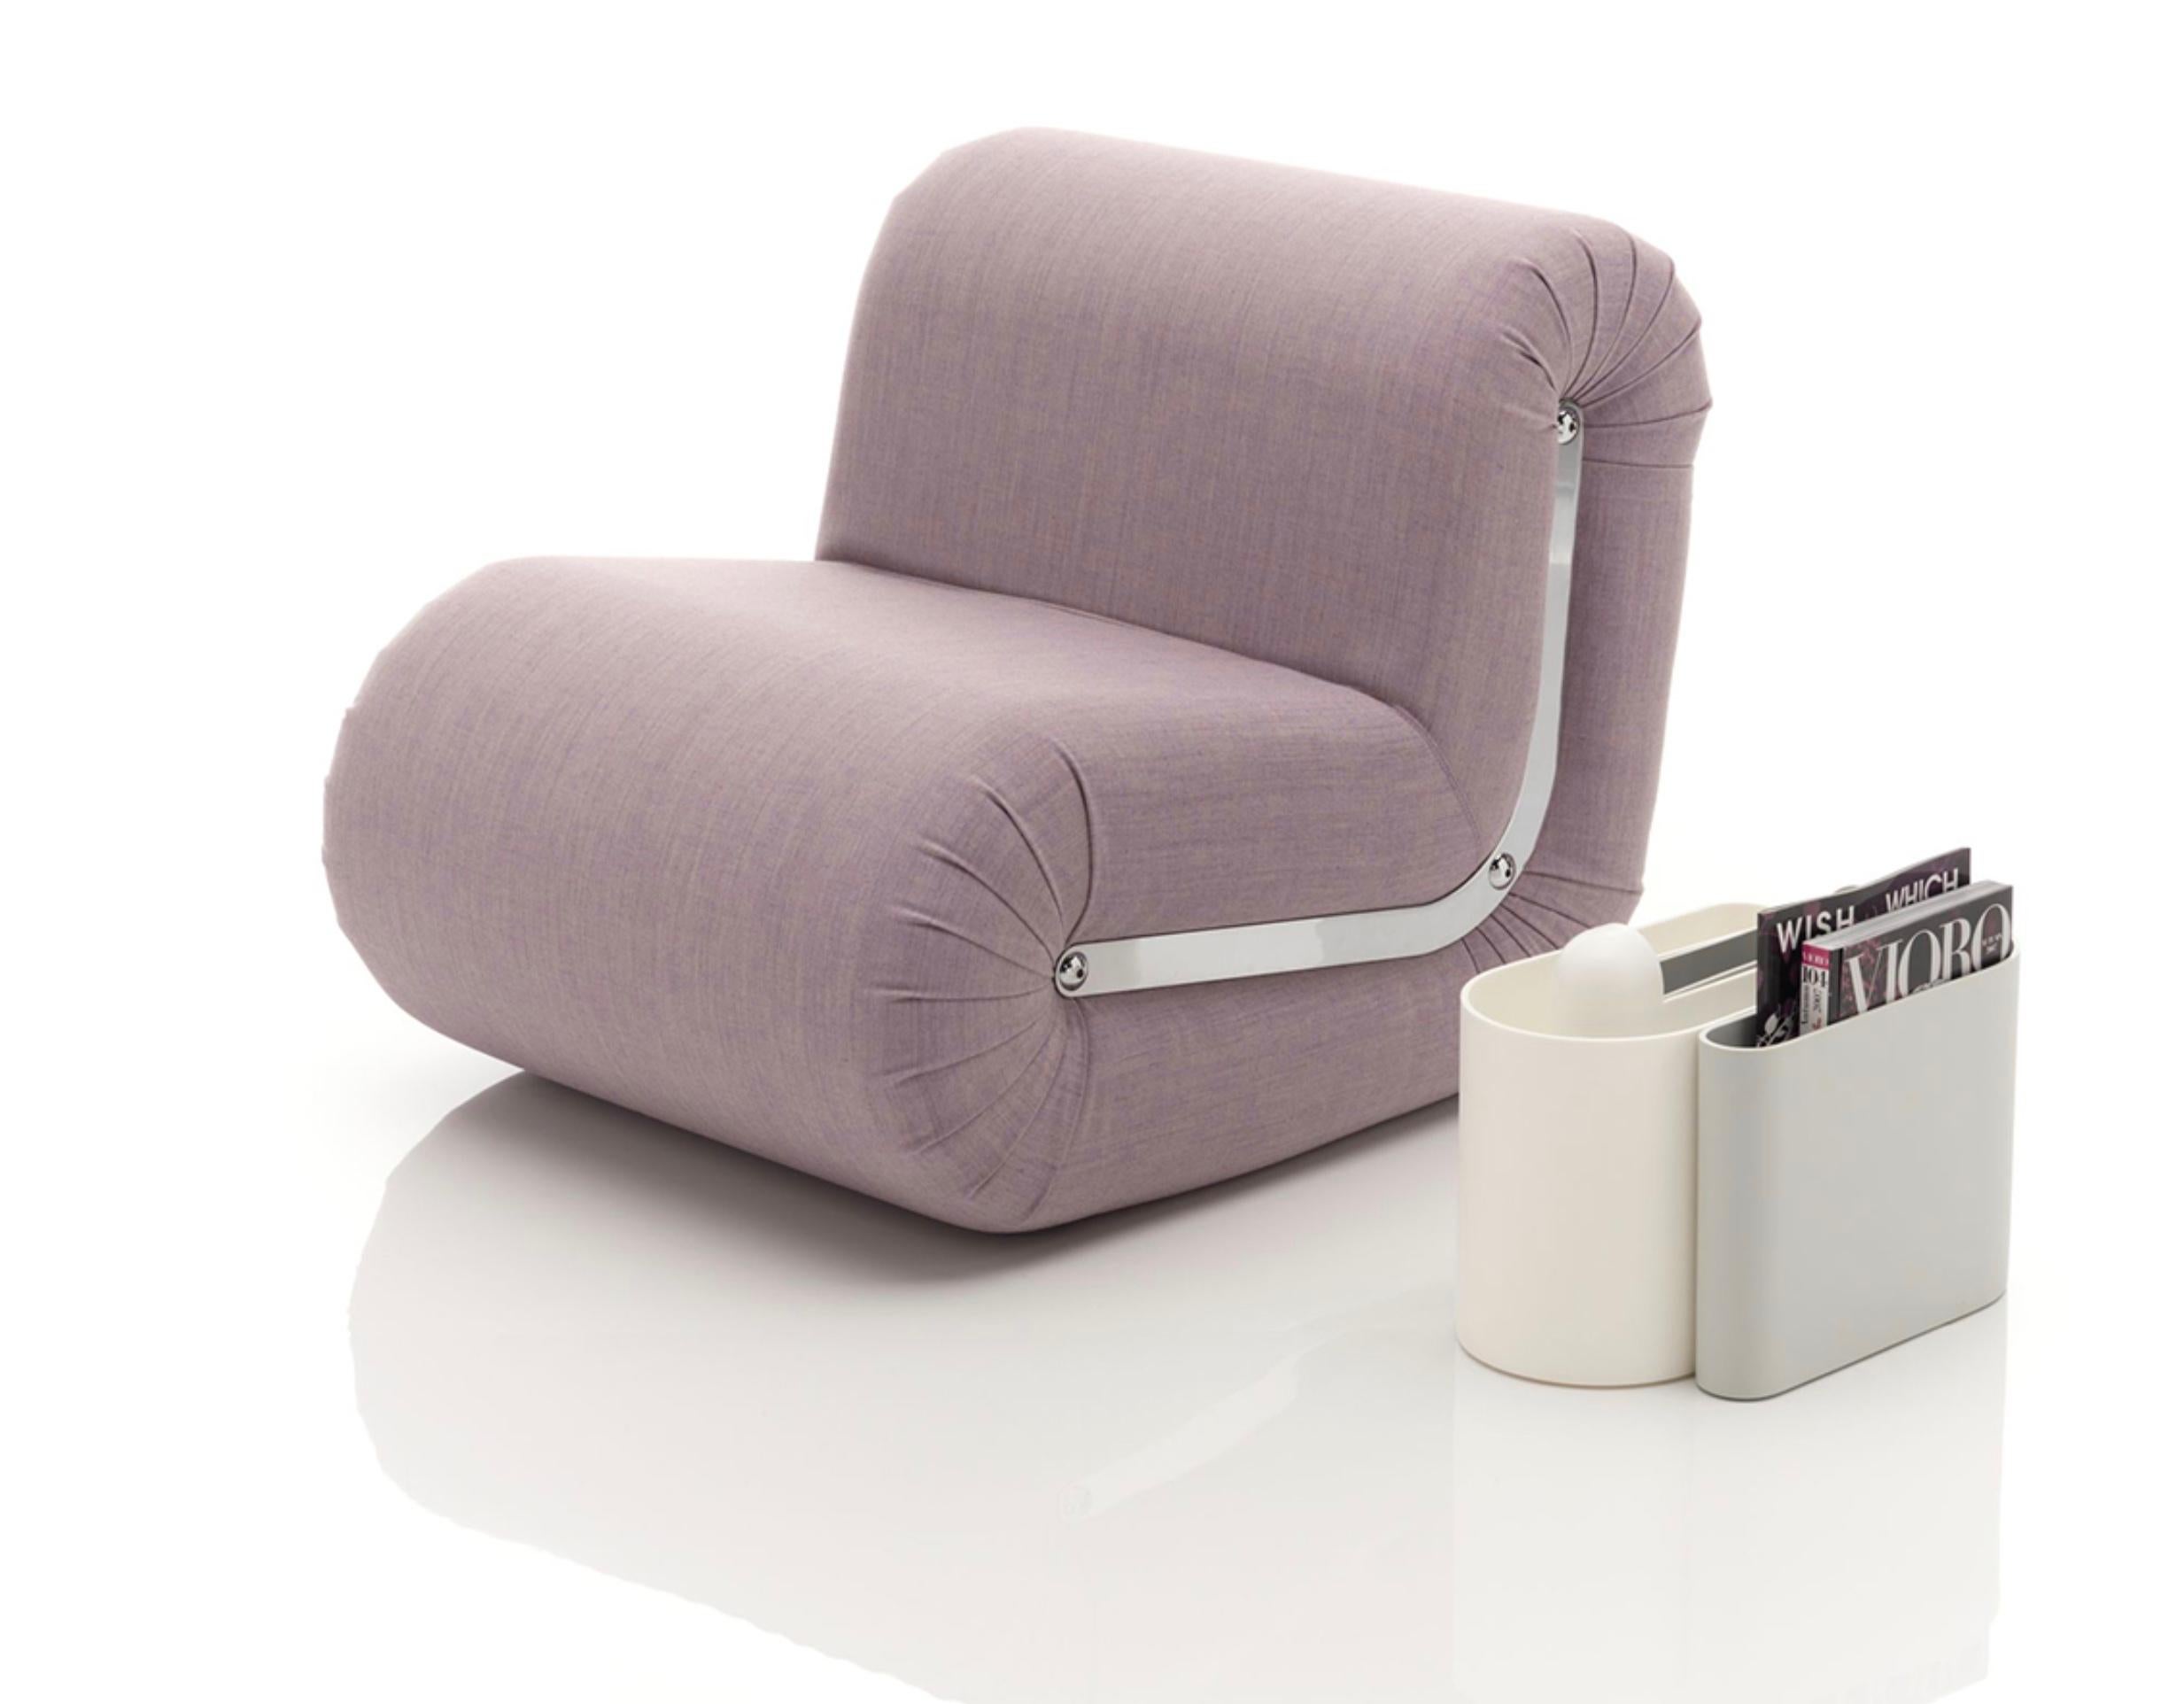 Rodolfo Bonetto ‘Boomerang’ Lounge Chair in 'Flukso' Velvet 1968 for B-Line In New Condition For Sale In Tilburg, NL